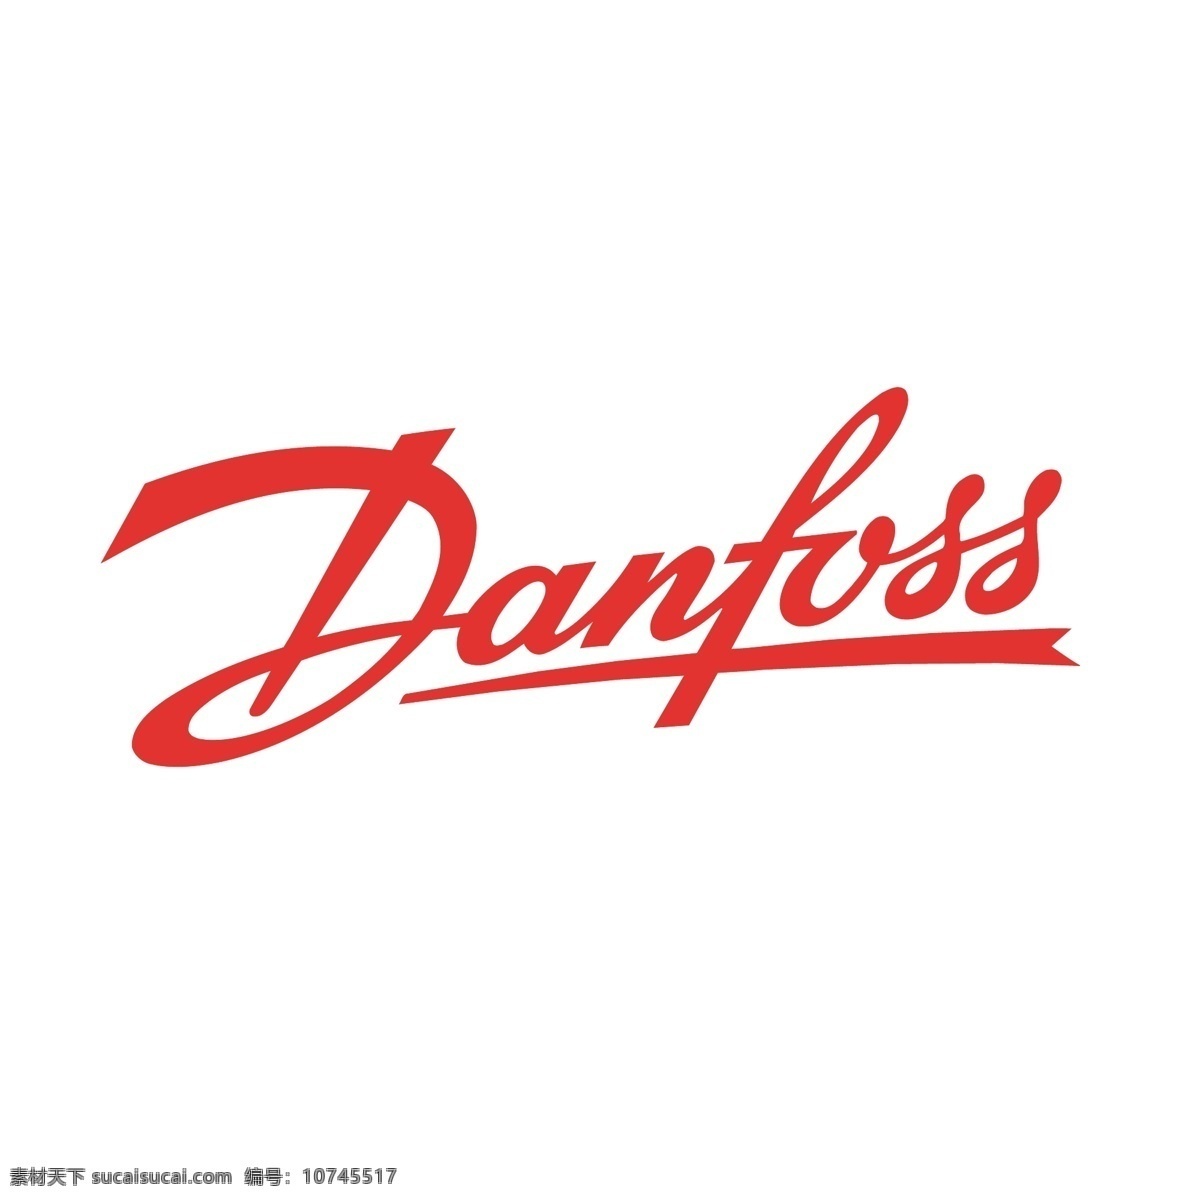 丹麦丹佛斯 矢量标志下载 免费矢量标识 商标 品牌标识 标识 矢量 免费 品牌 公司 白色